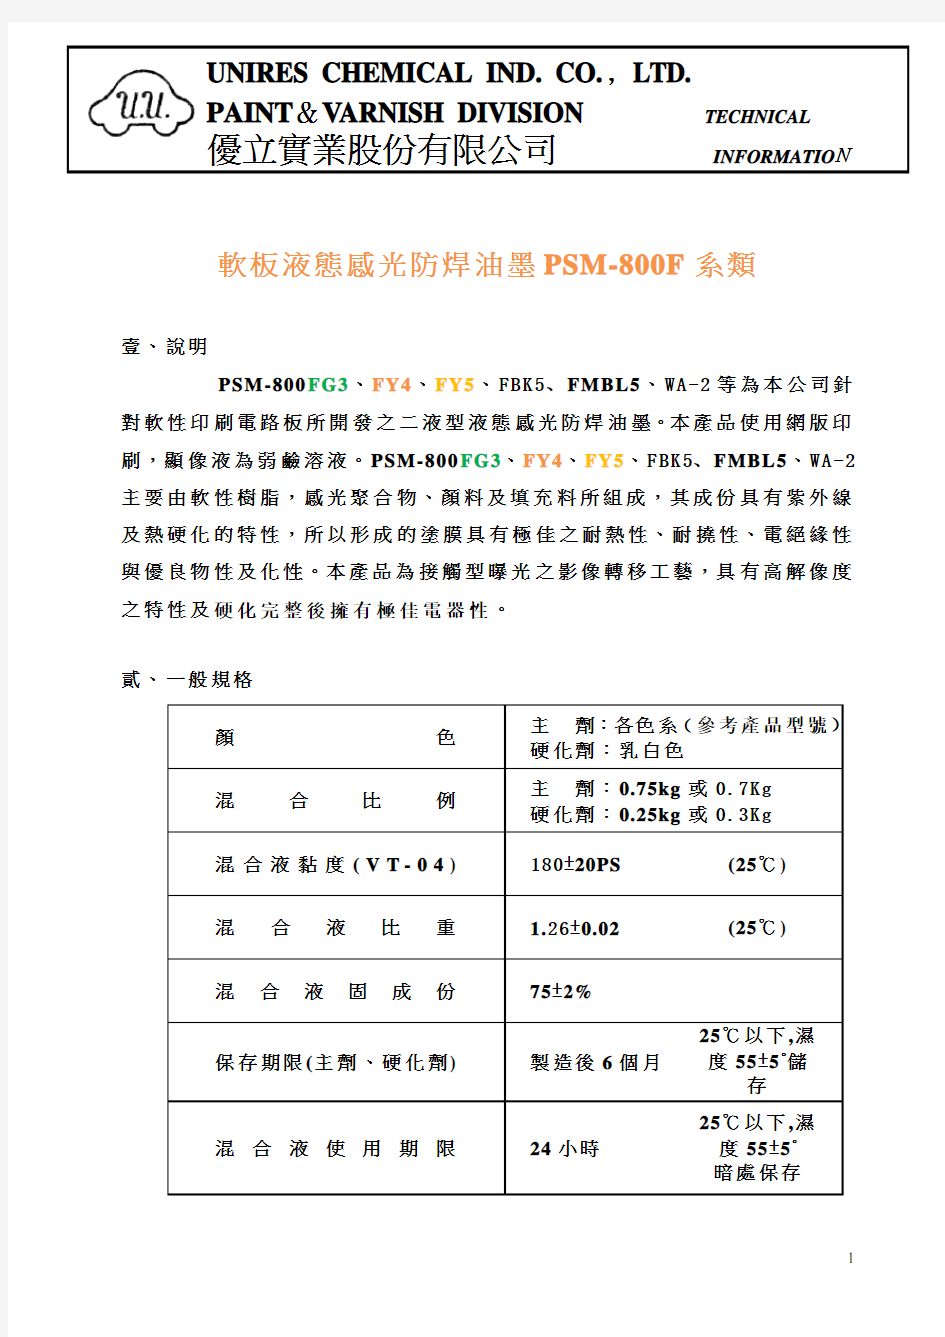 PSM-800F中文各色系技术资料优力(3)